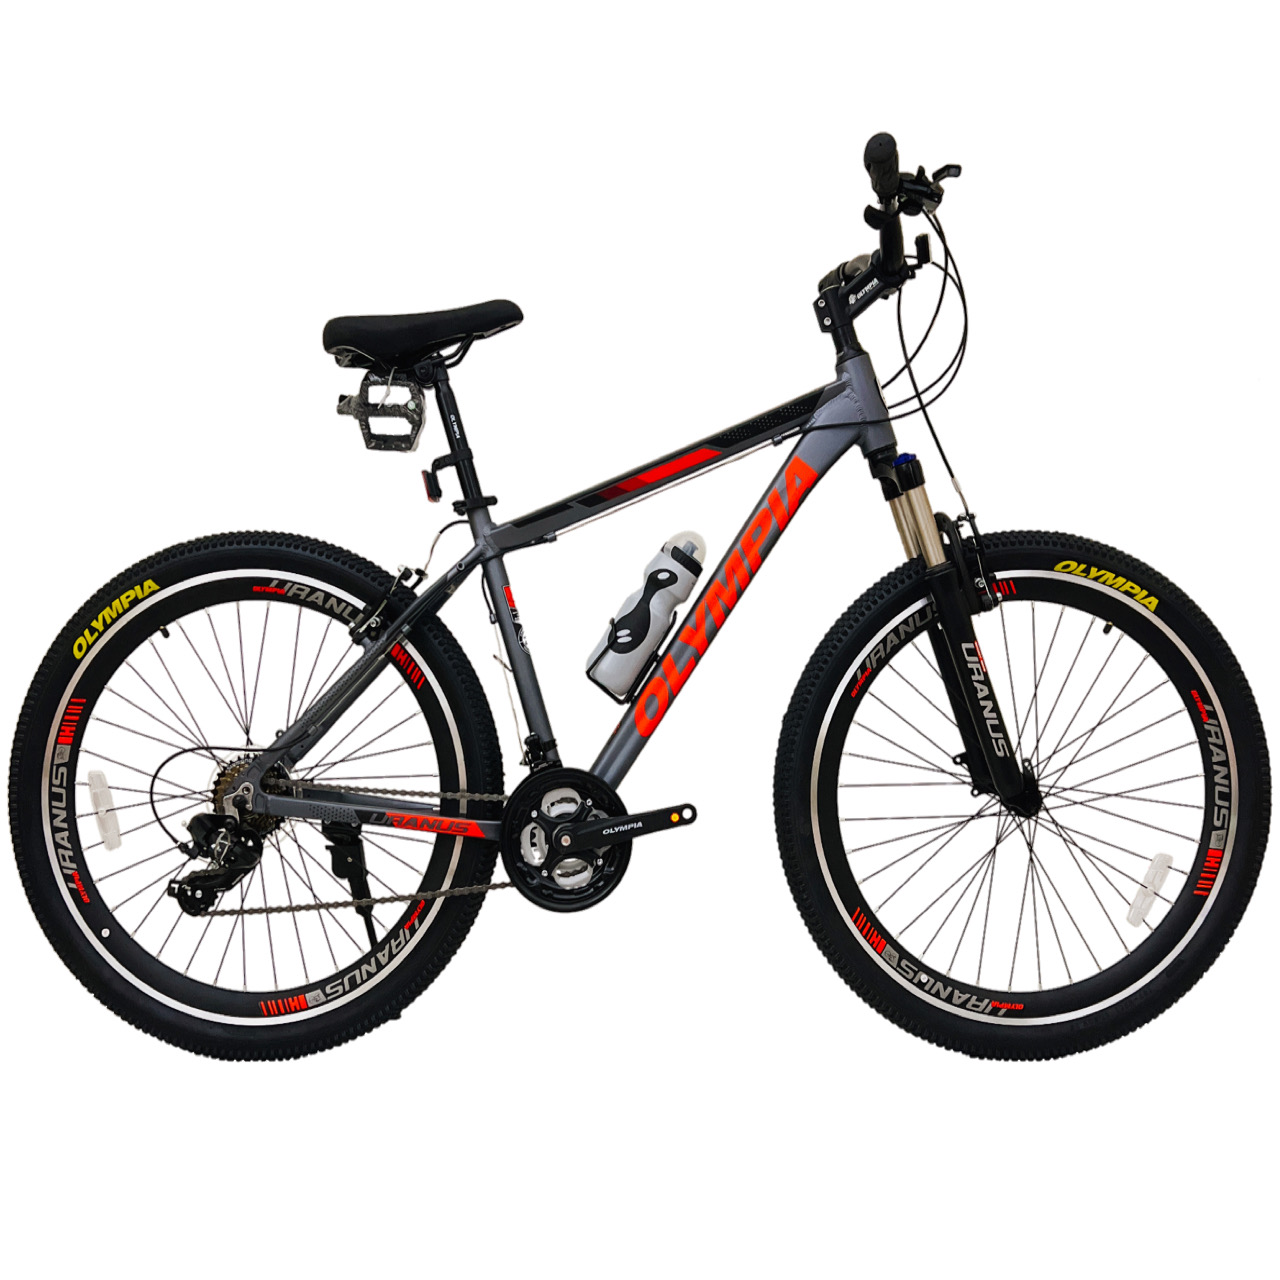 نکته خرید - قیمت روز دوچرخه کوهستان المپیا مدل TOWER کد 2 سایز طوقه 27.5 خرید